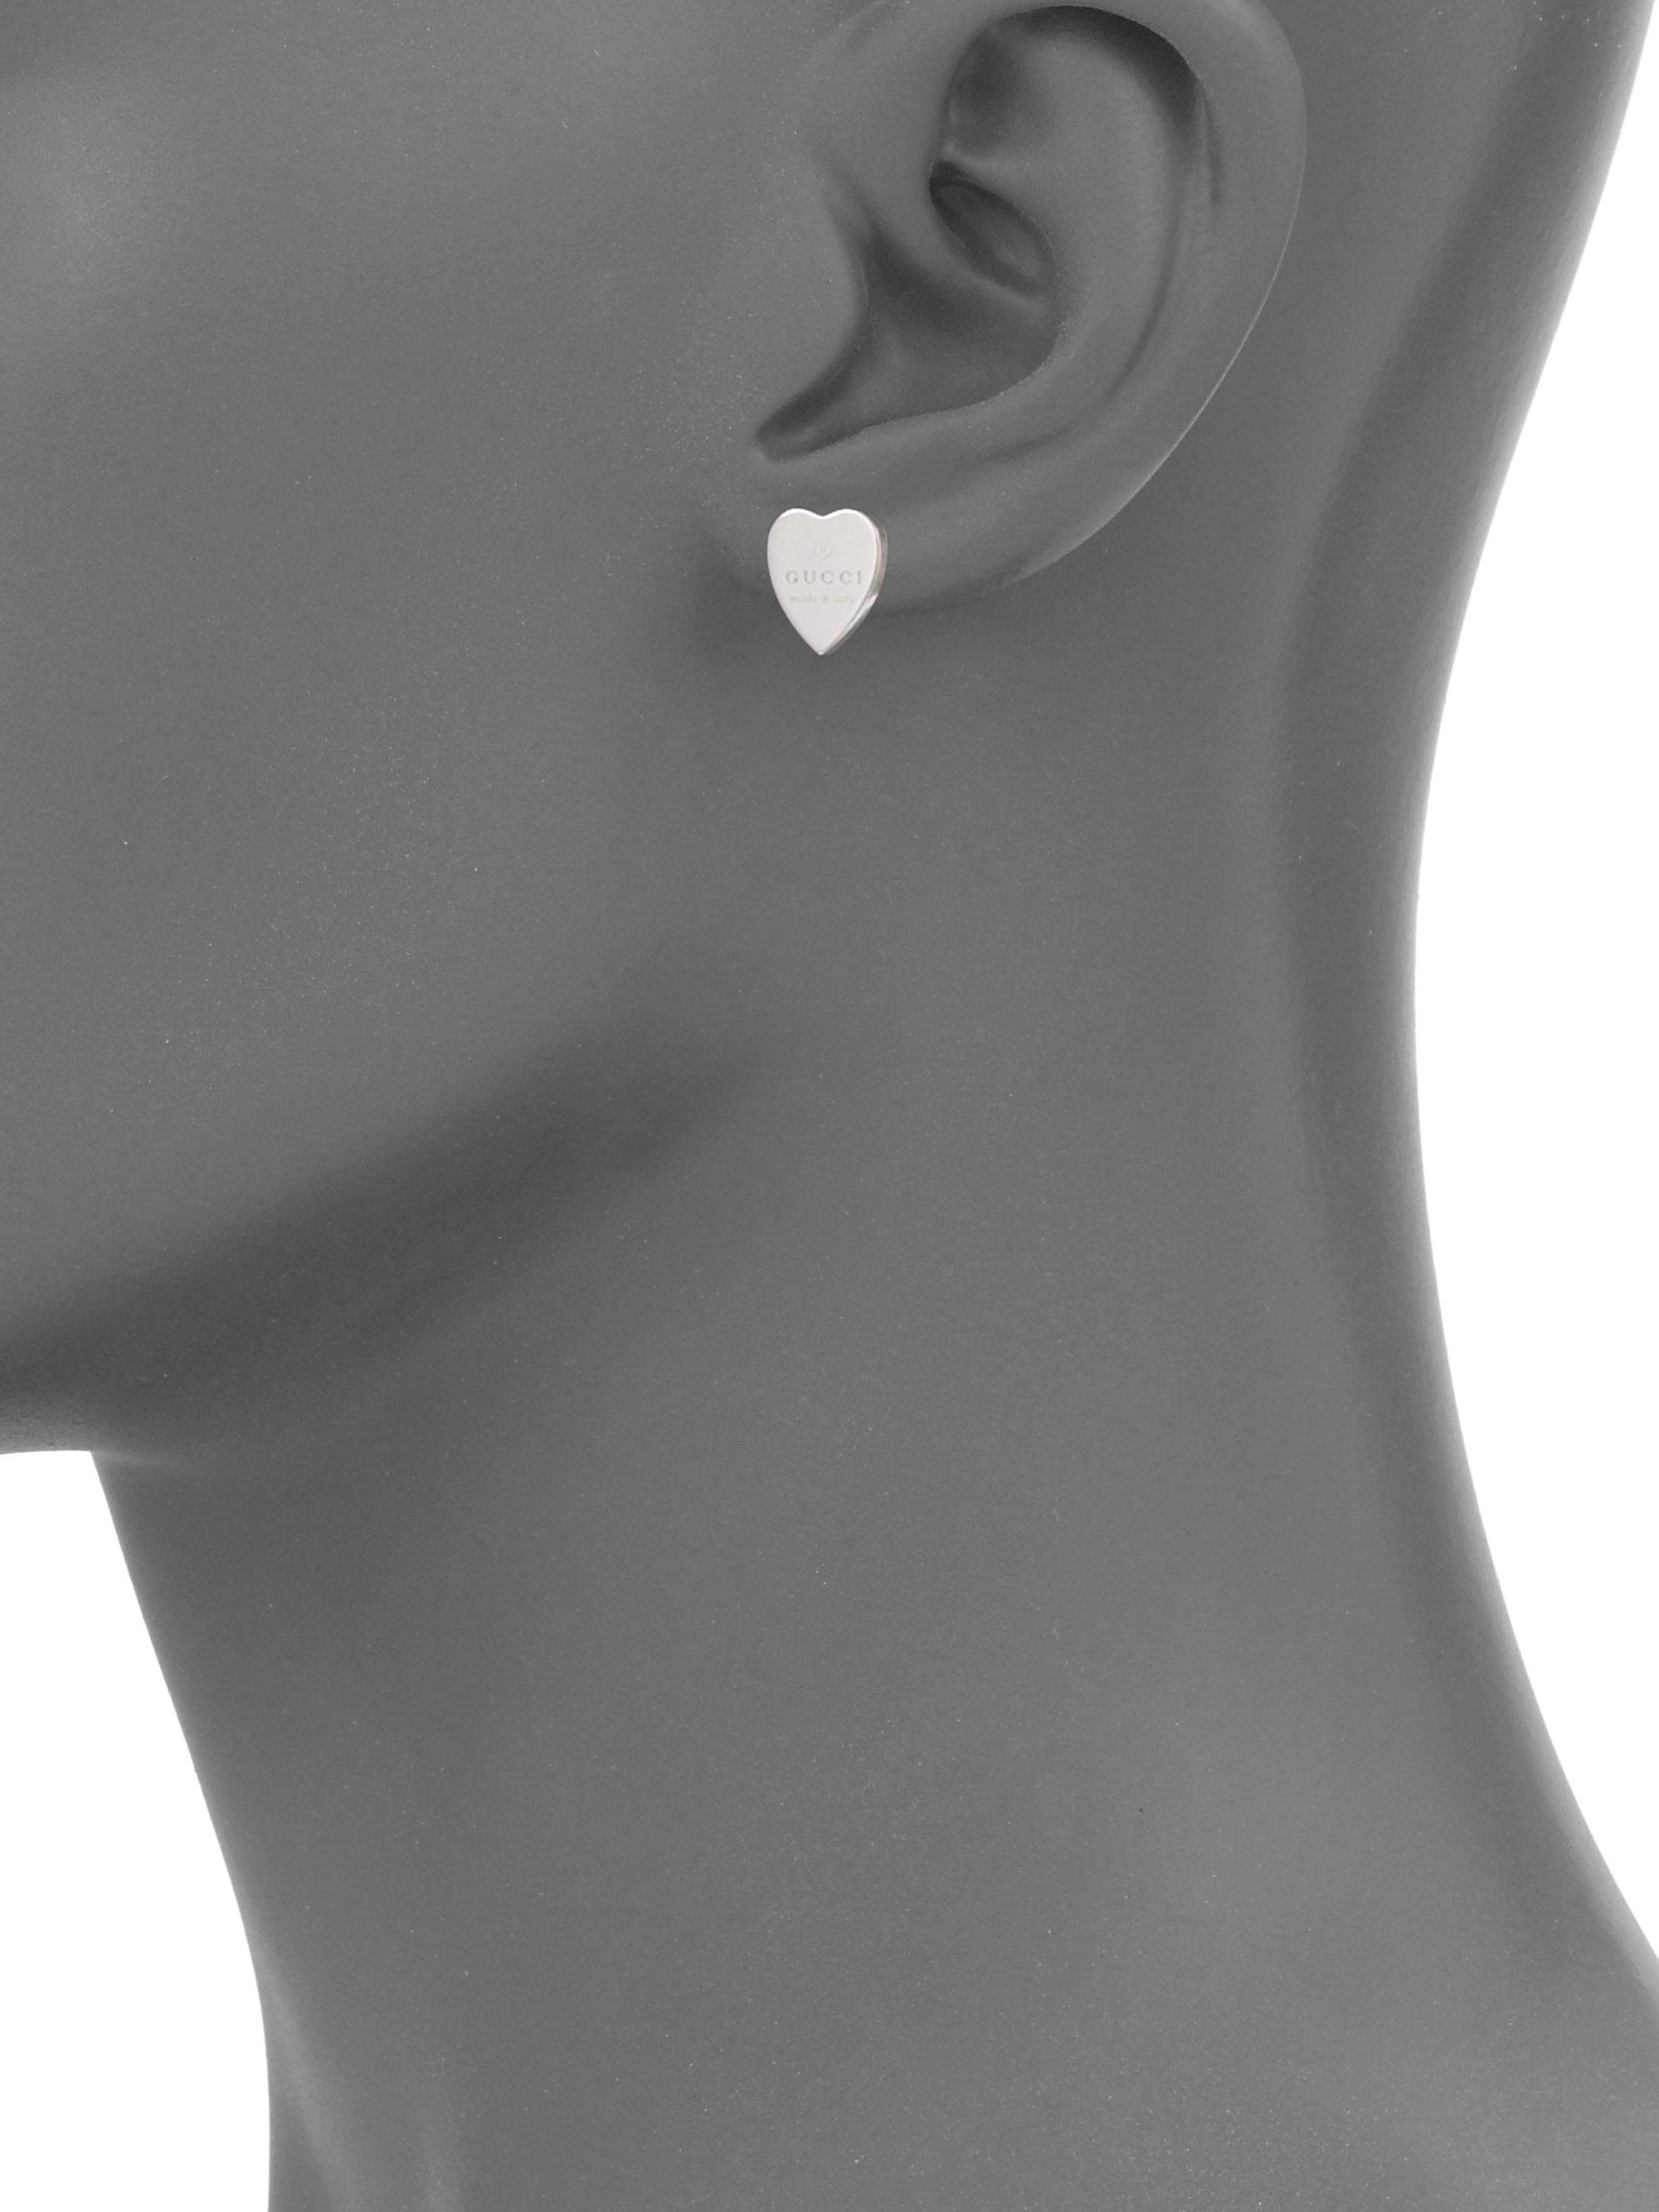 gucci heart earrings silver